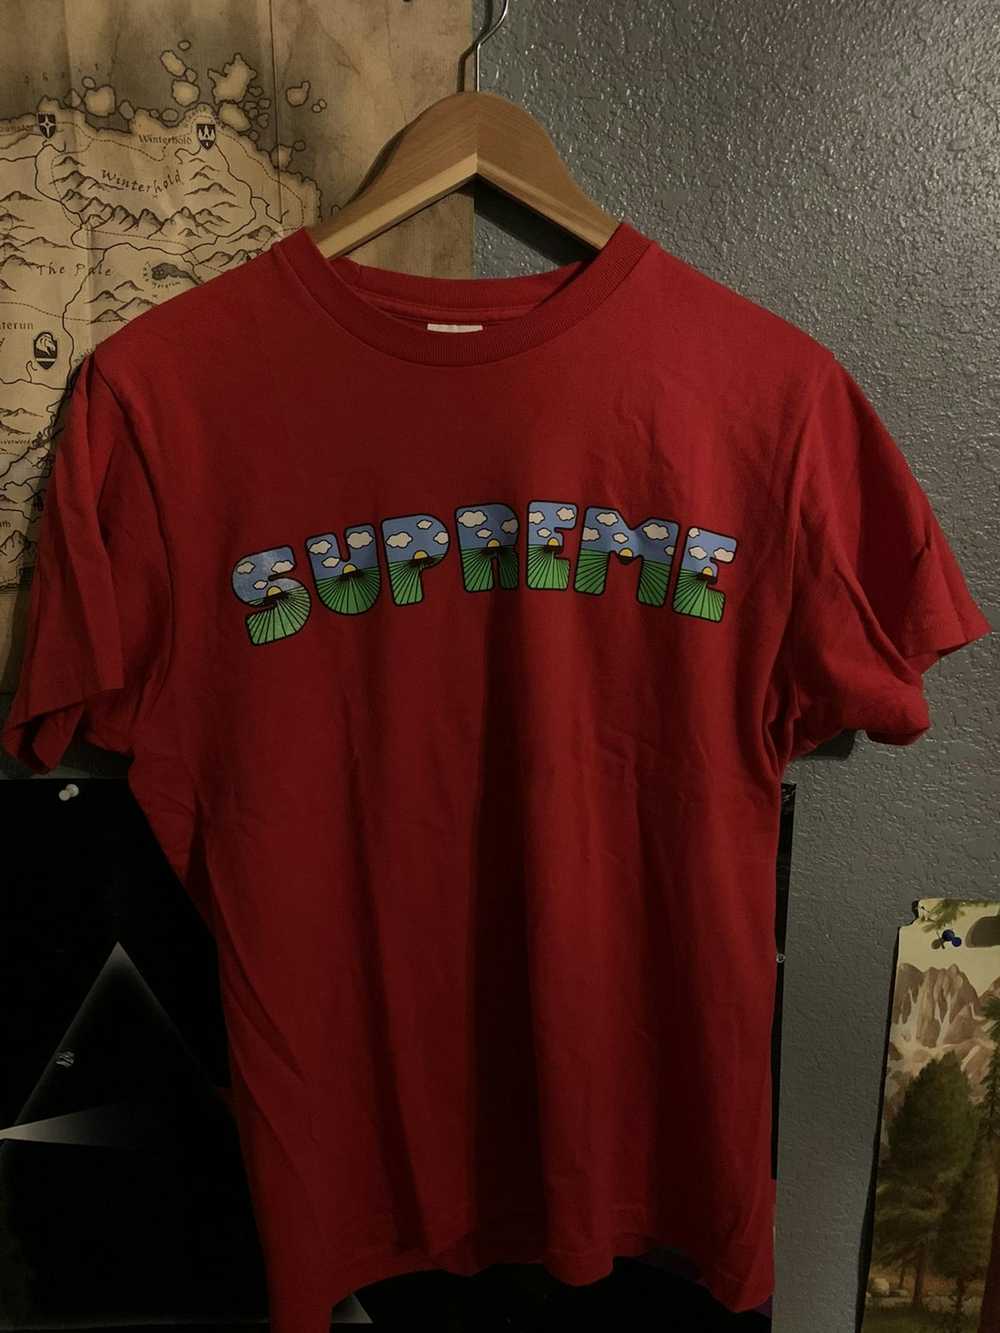 Supreme Supreme “This is Shit” Tee - image 1